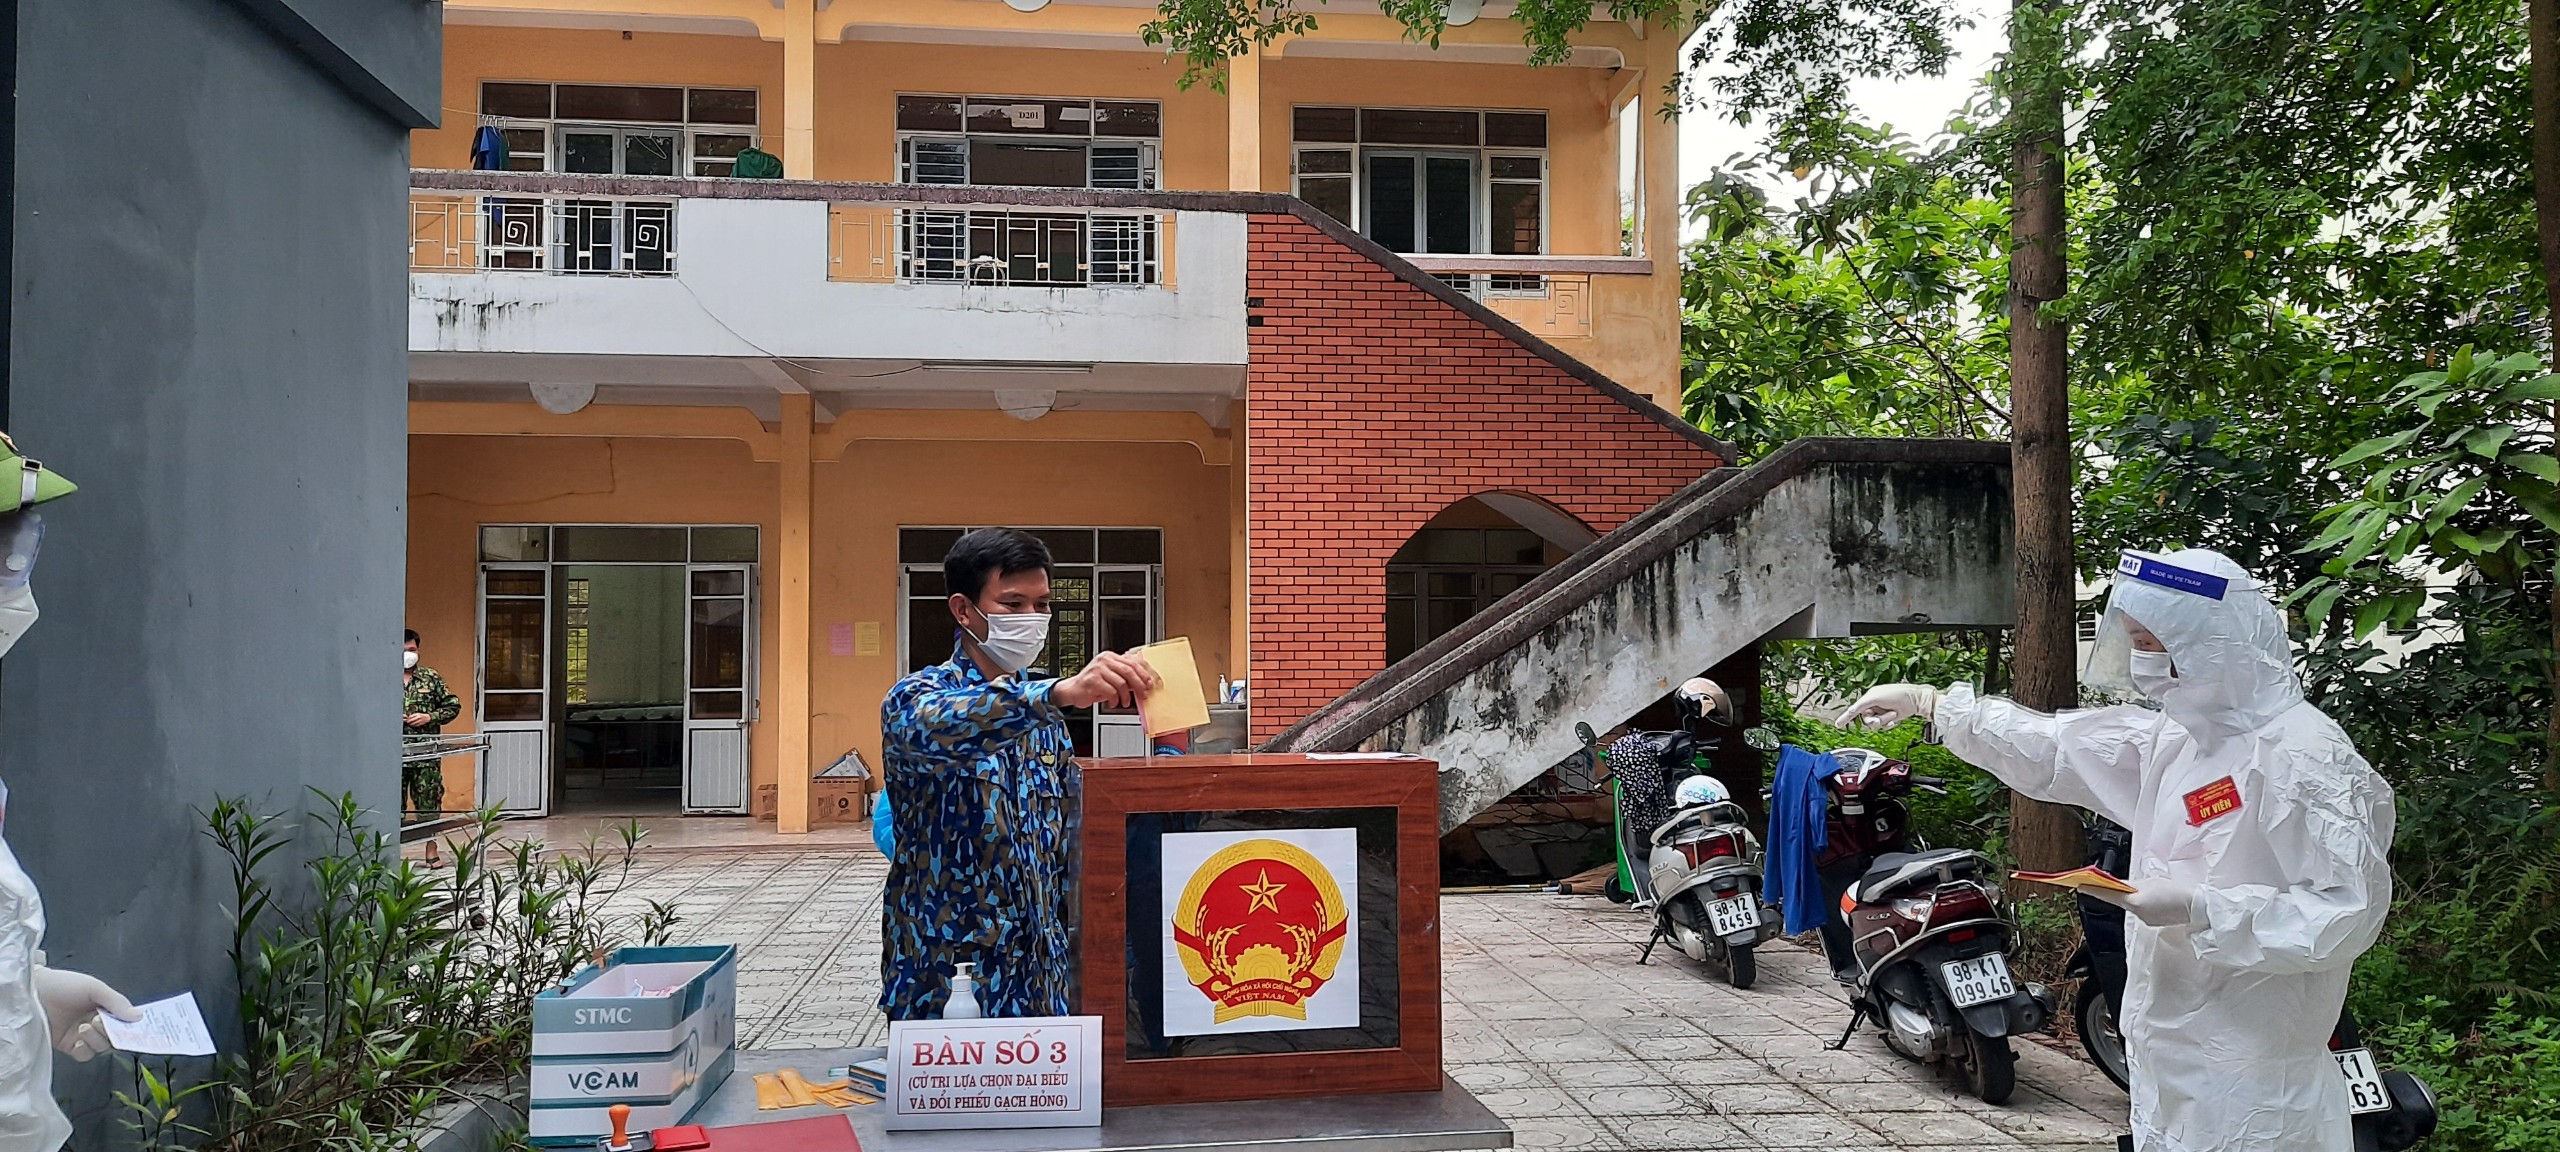 Những hình ảnh về bầu cử ở khu cách ly tại tỉnh Bắc Giang - Ảnh 3.